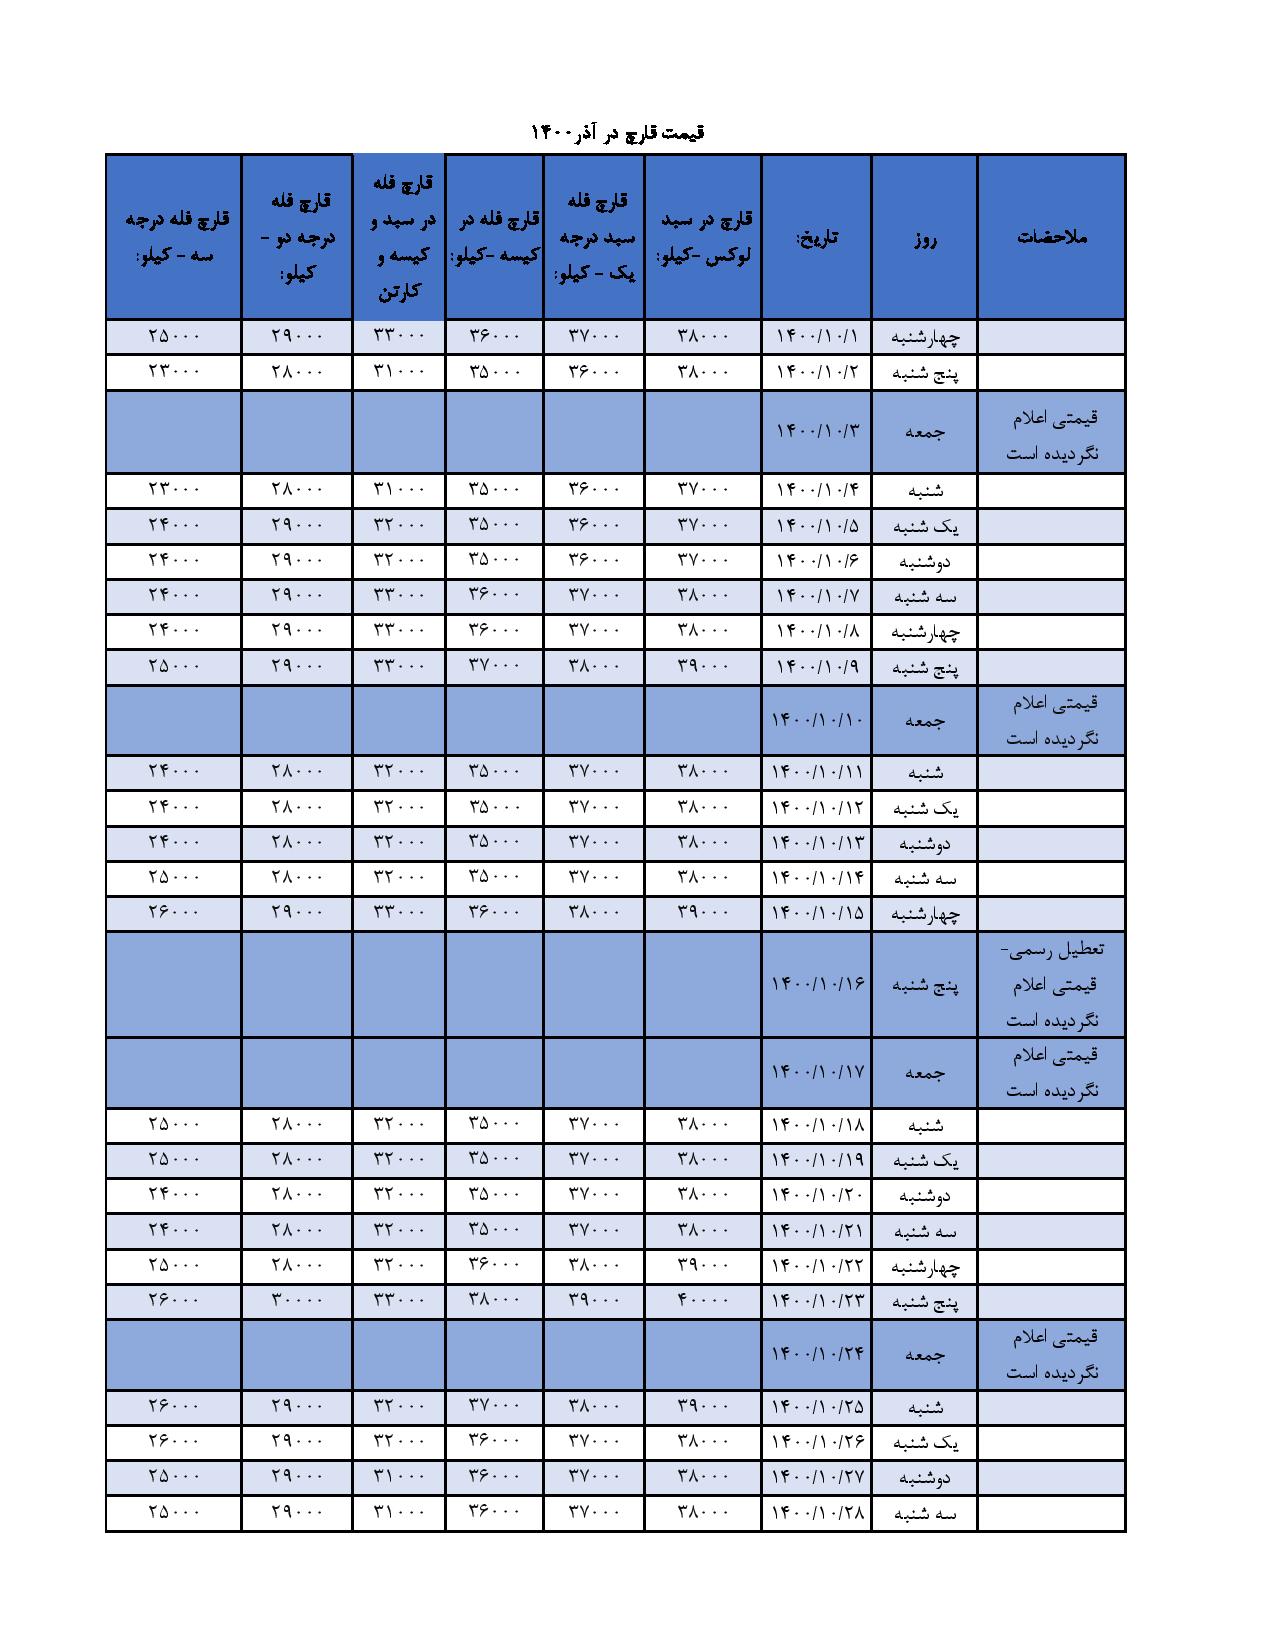 جدول و نمودار قیمت بازار قارچ خوراکی در آذر ۱۴۰۰